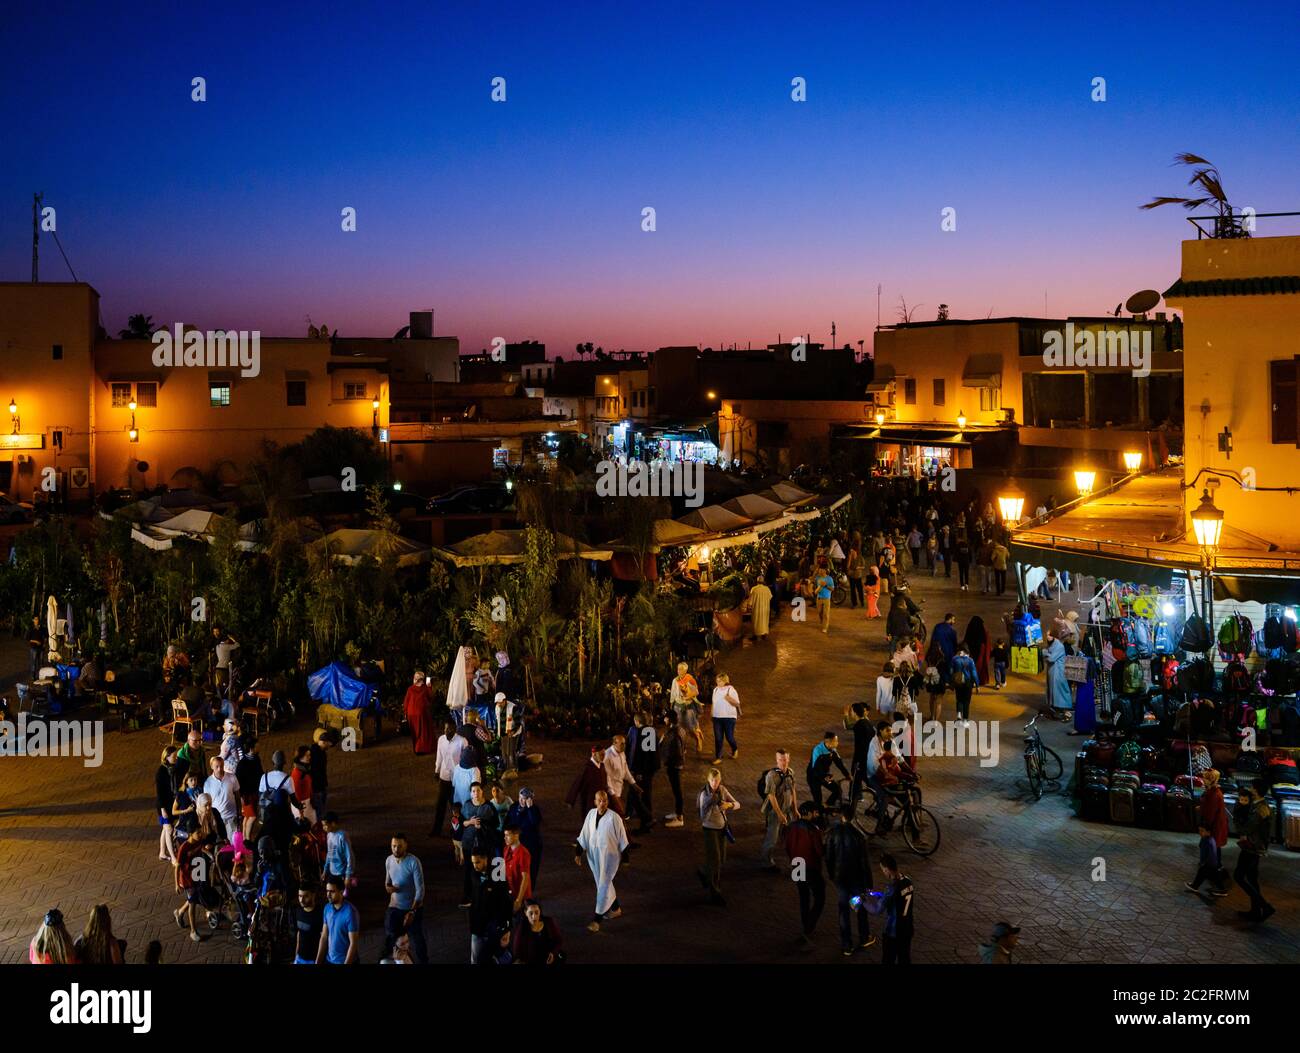 MARRAKESCH, MAROKKO - CA. APRIL 2018: Blick auf den Platz Jemaa el-Fnaa, nachts in Marrakesch Stockfoto